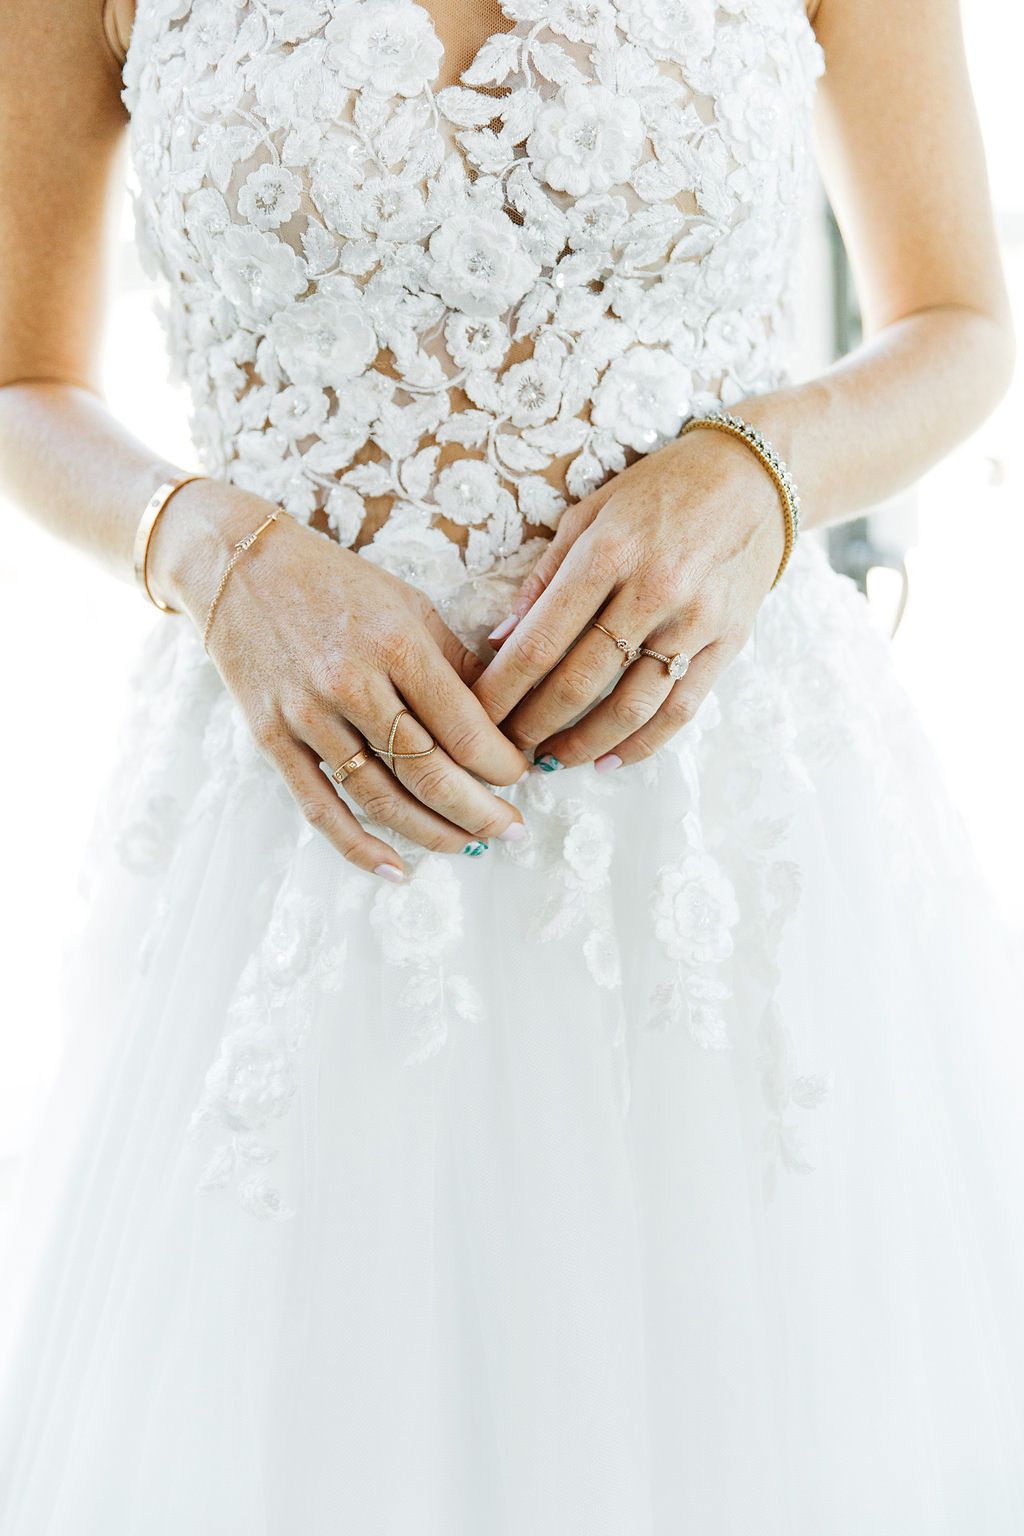 emily adhir wedding jewelry manicure